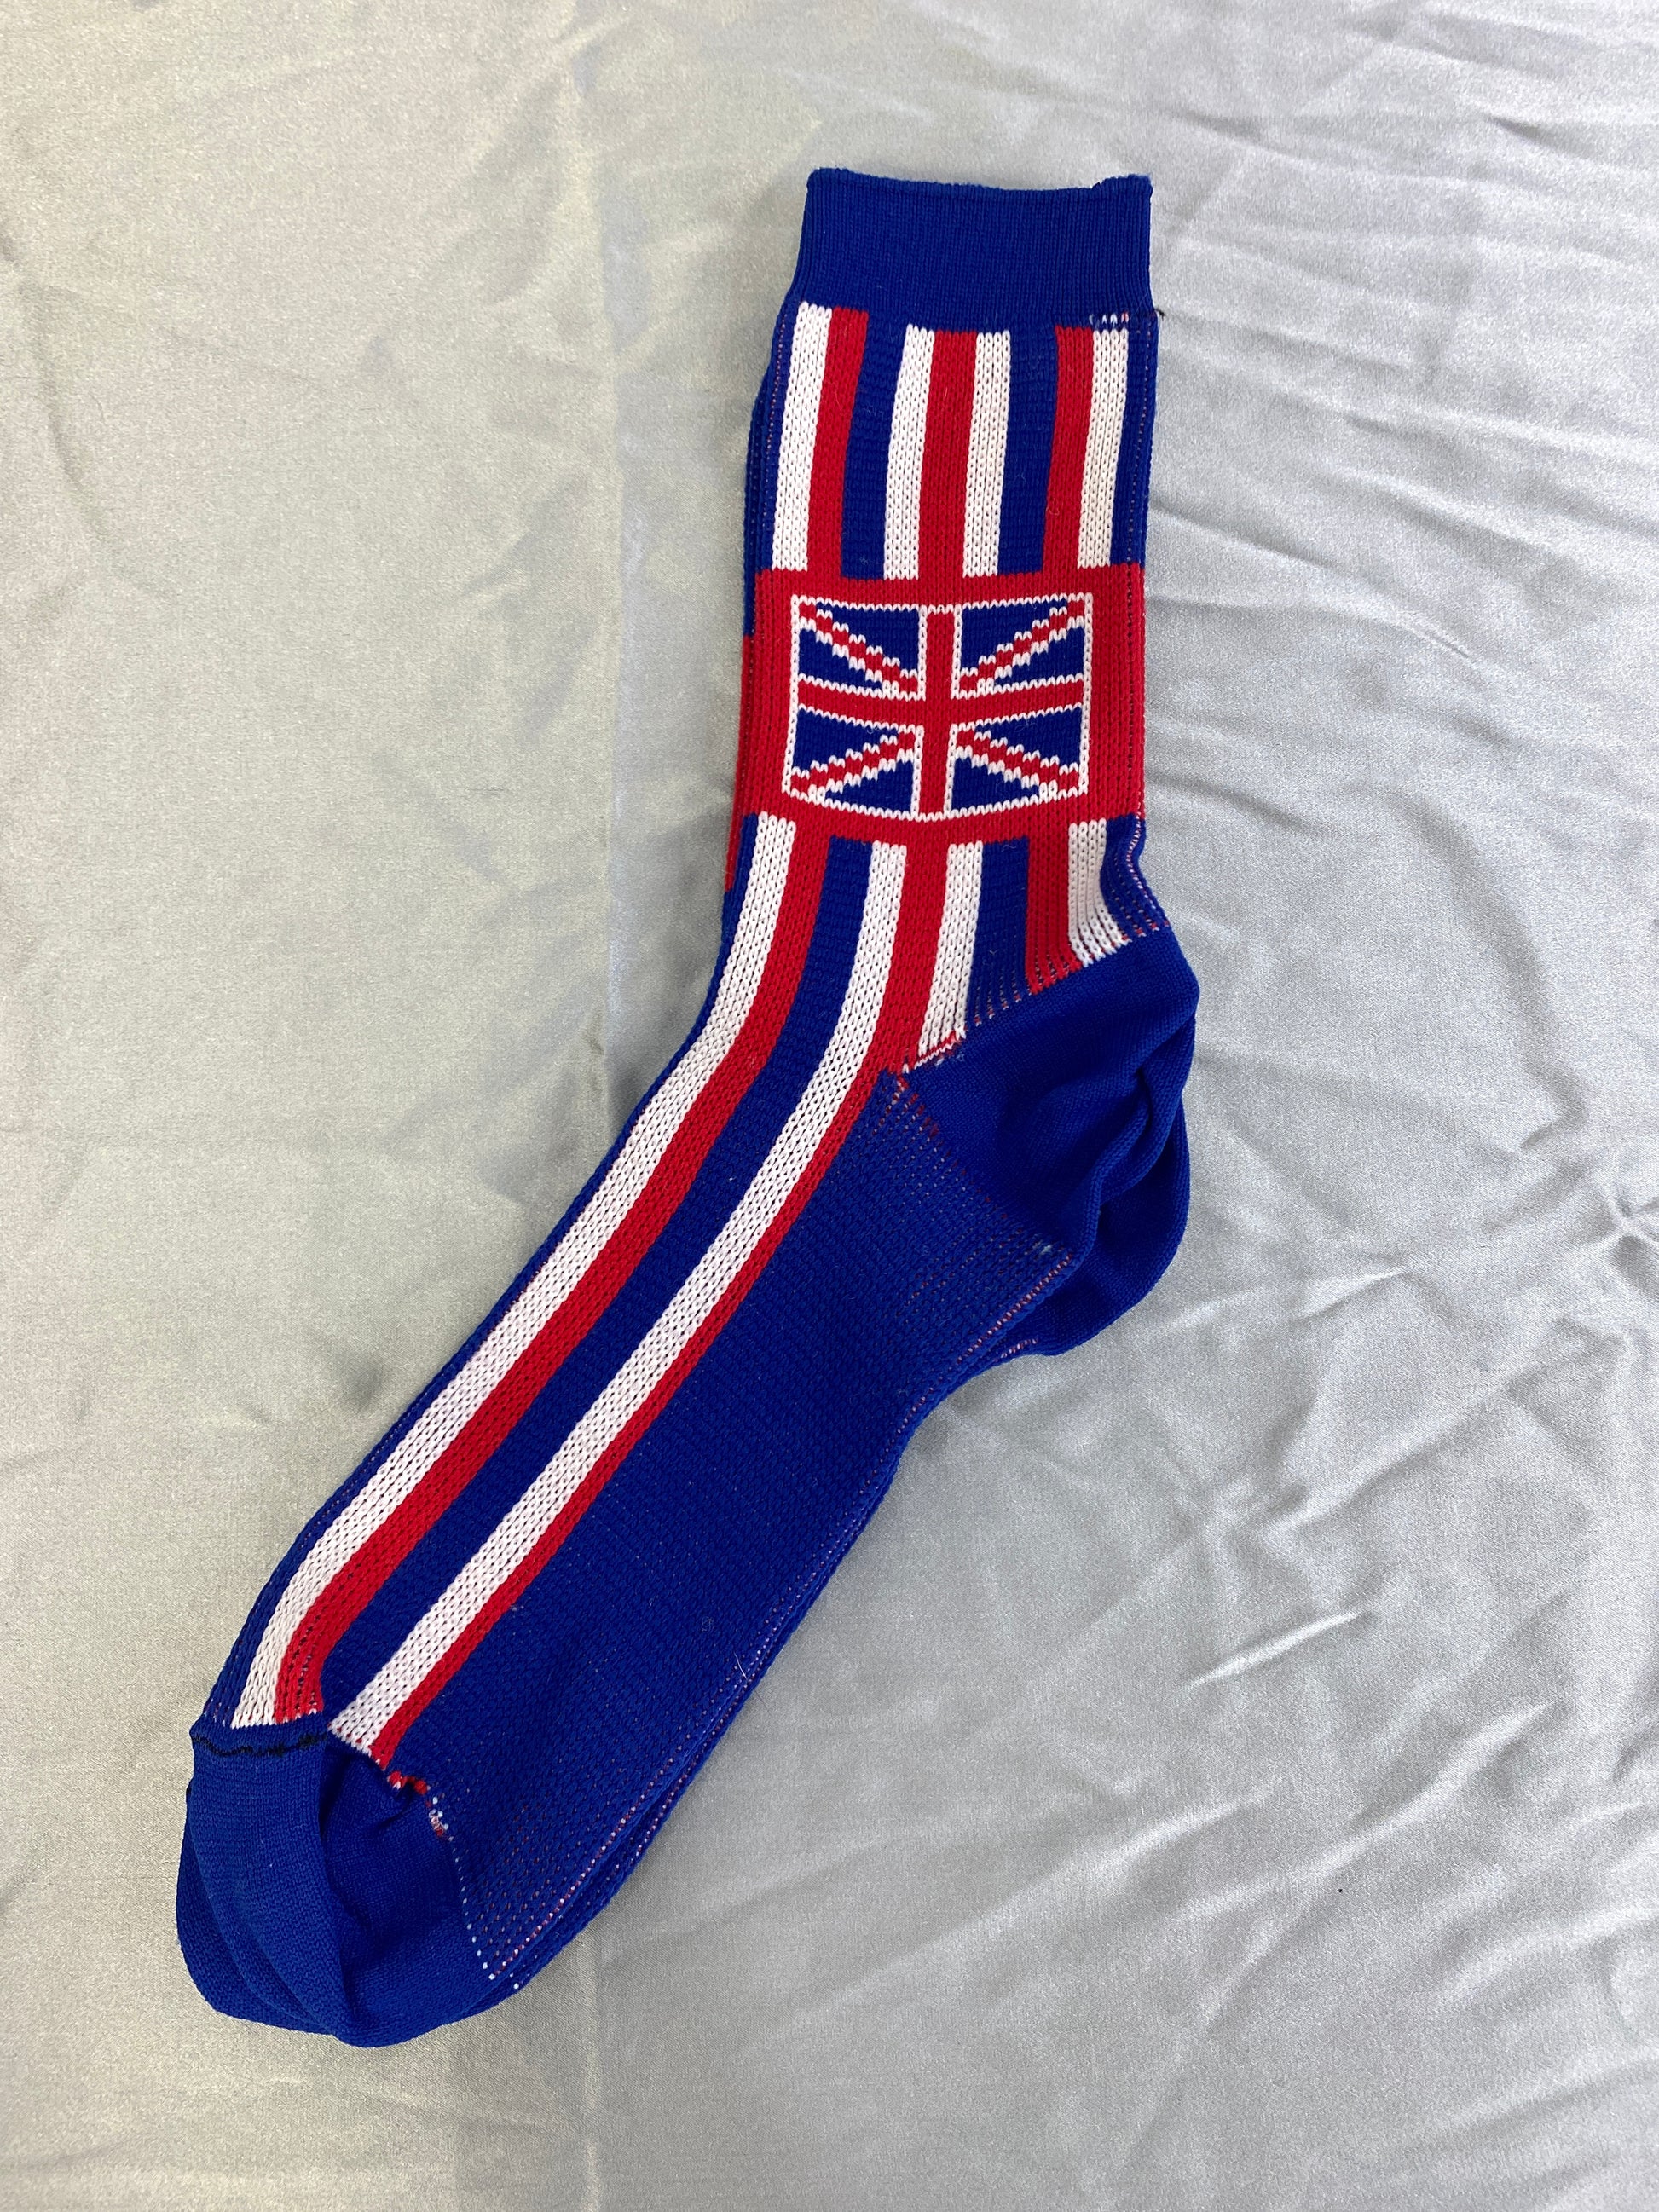 Vintage Deadstock British Union Jack Socks